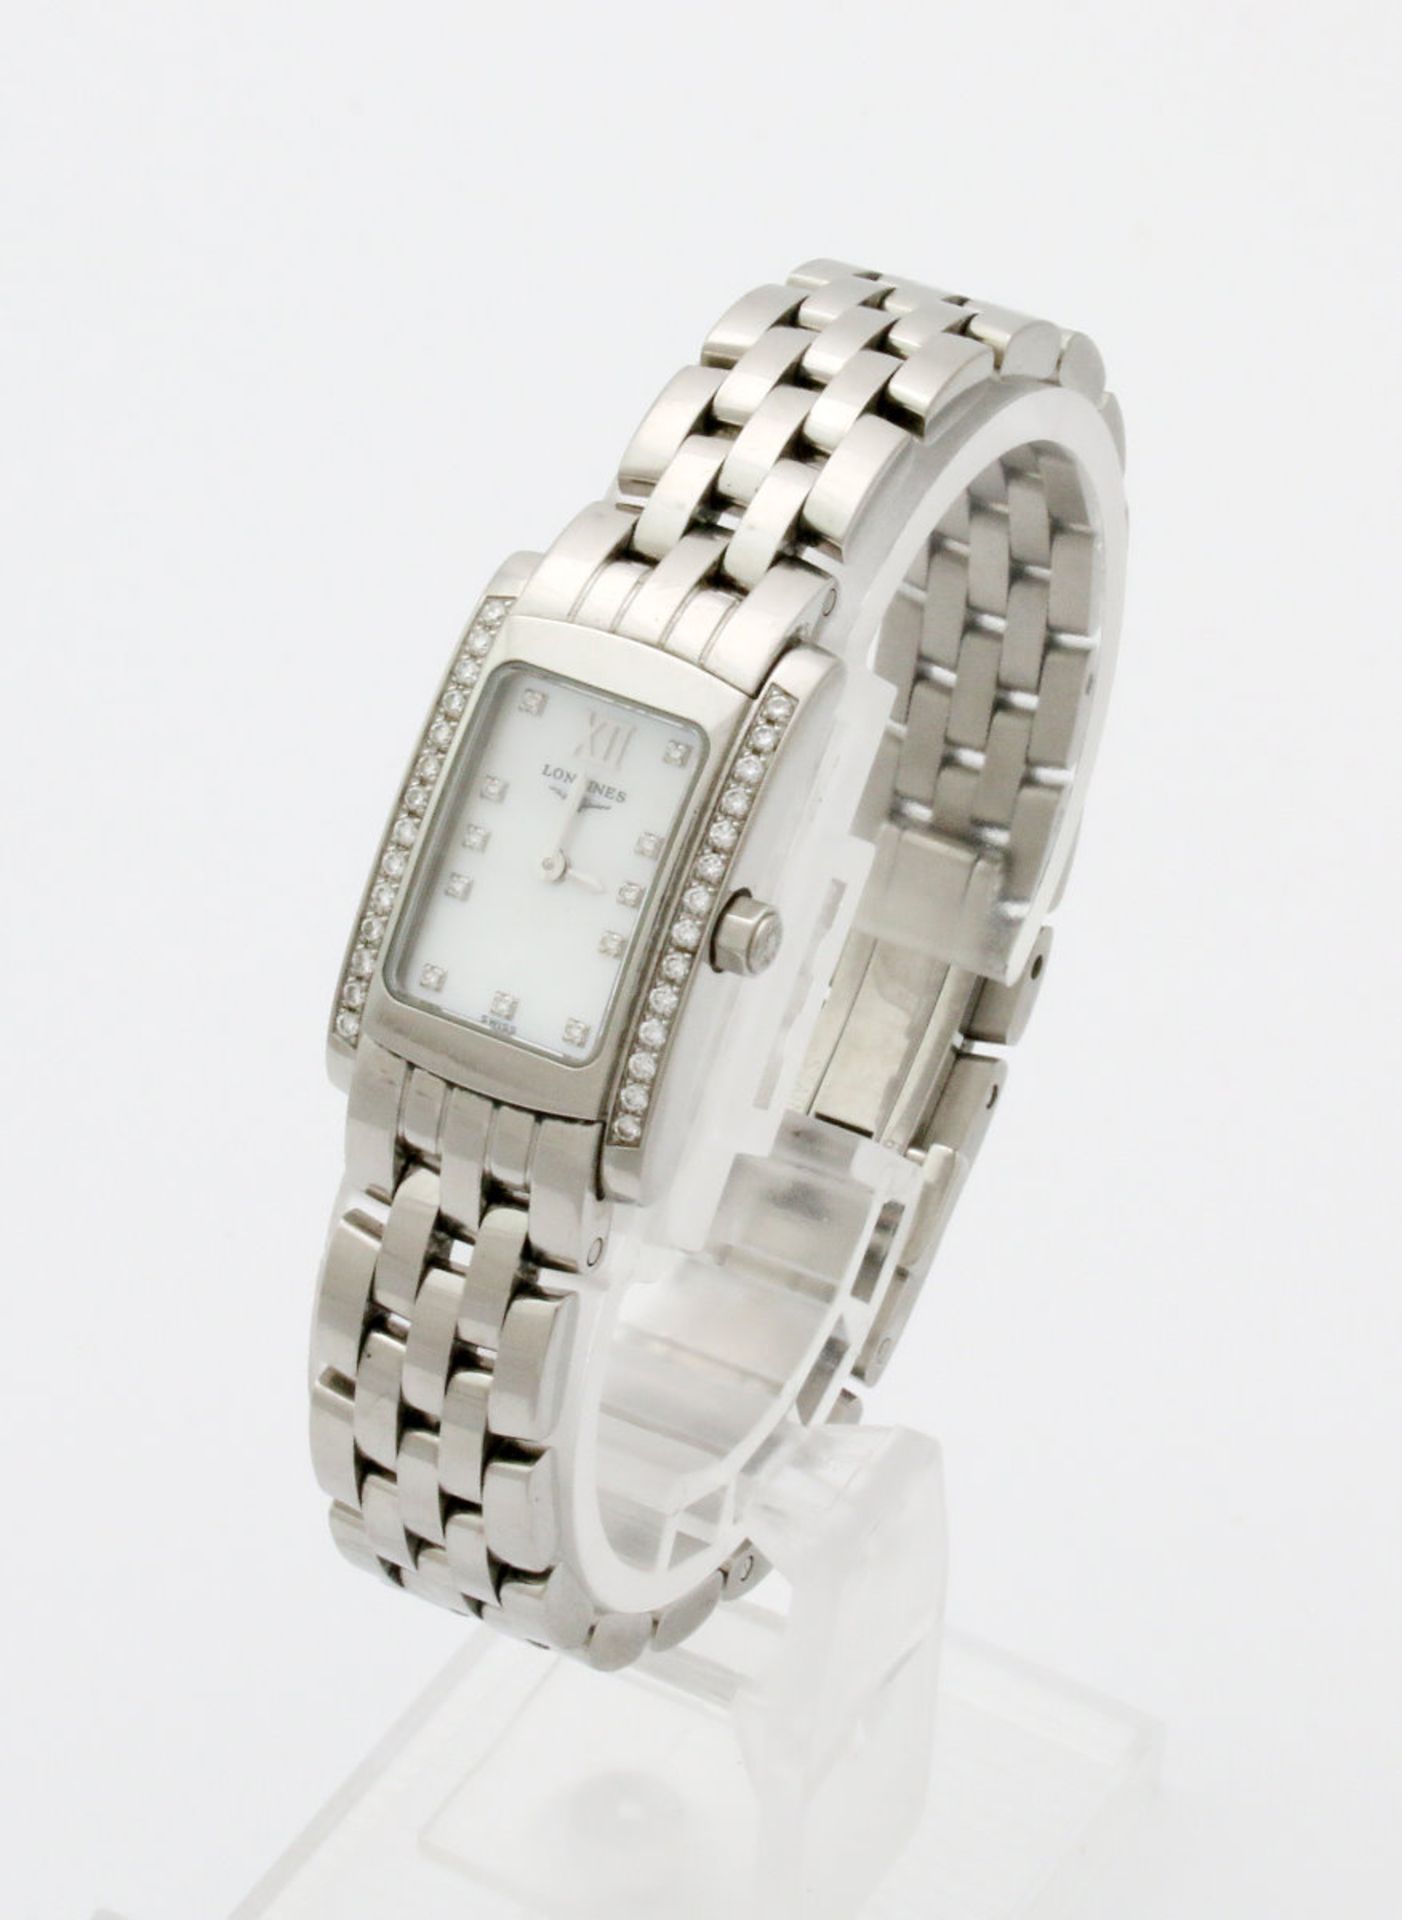 Armbanduhr Longines "Dolce Vita" mit Brillanten Quarzwerk, Edelstahlgehäuse, Maße: 27 x 16 mm, - Bild 5 aus 7